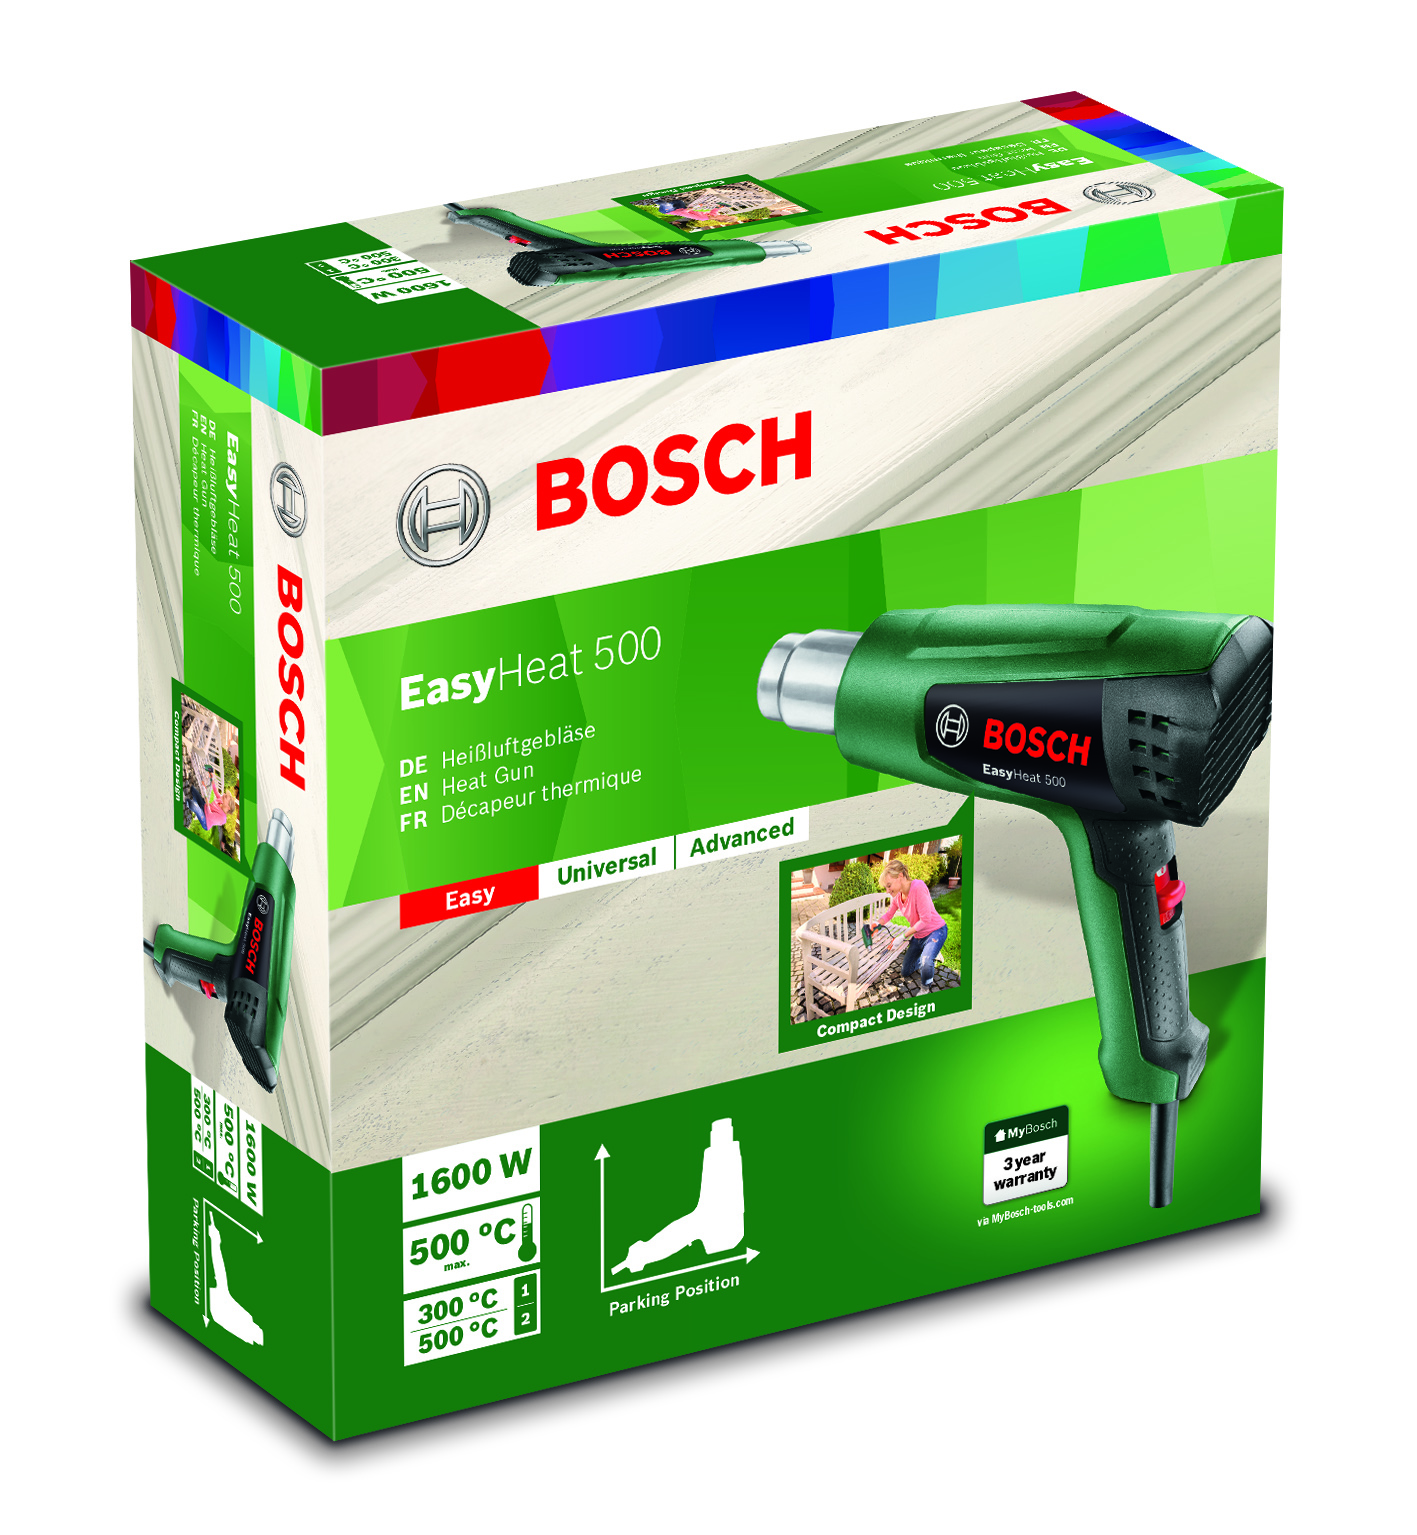 Bosch Heißluftgebläse Produktverpackung